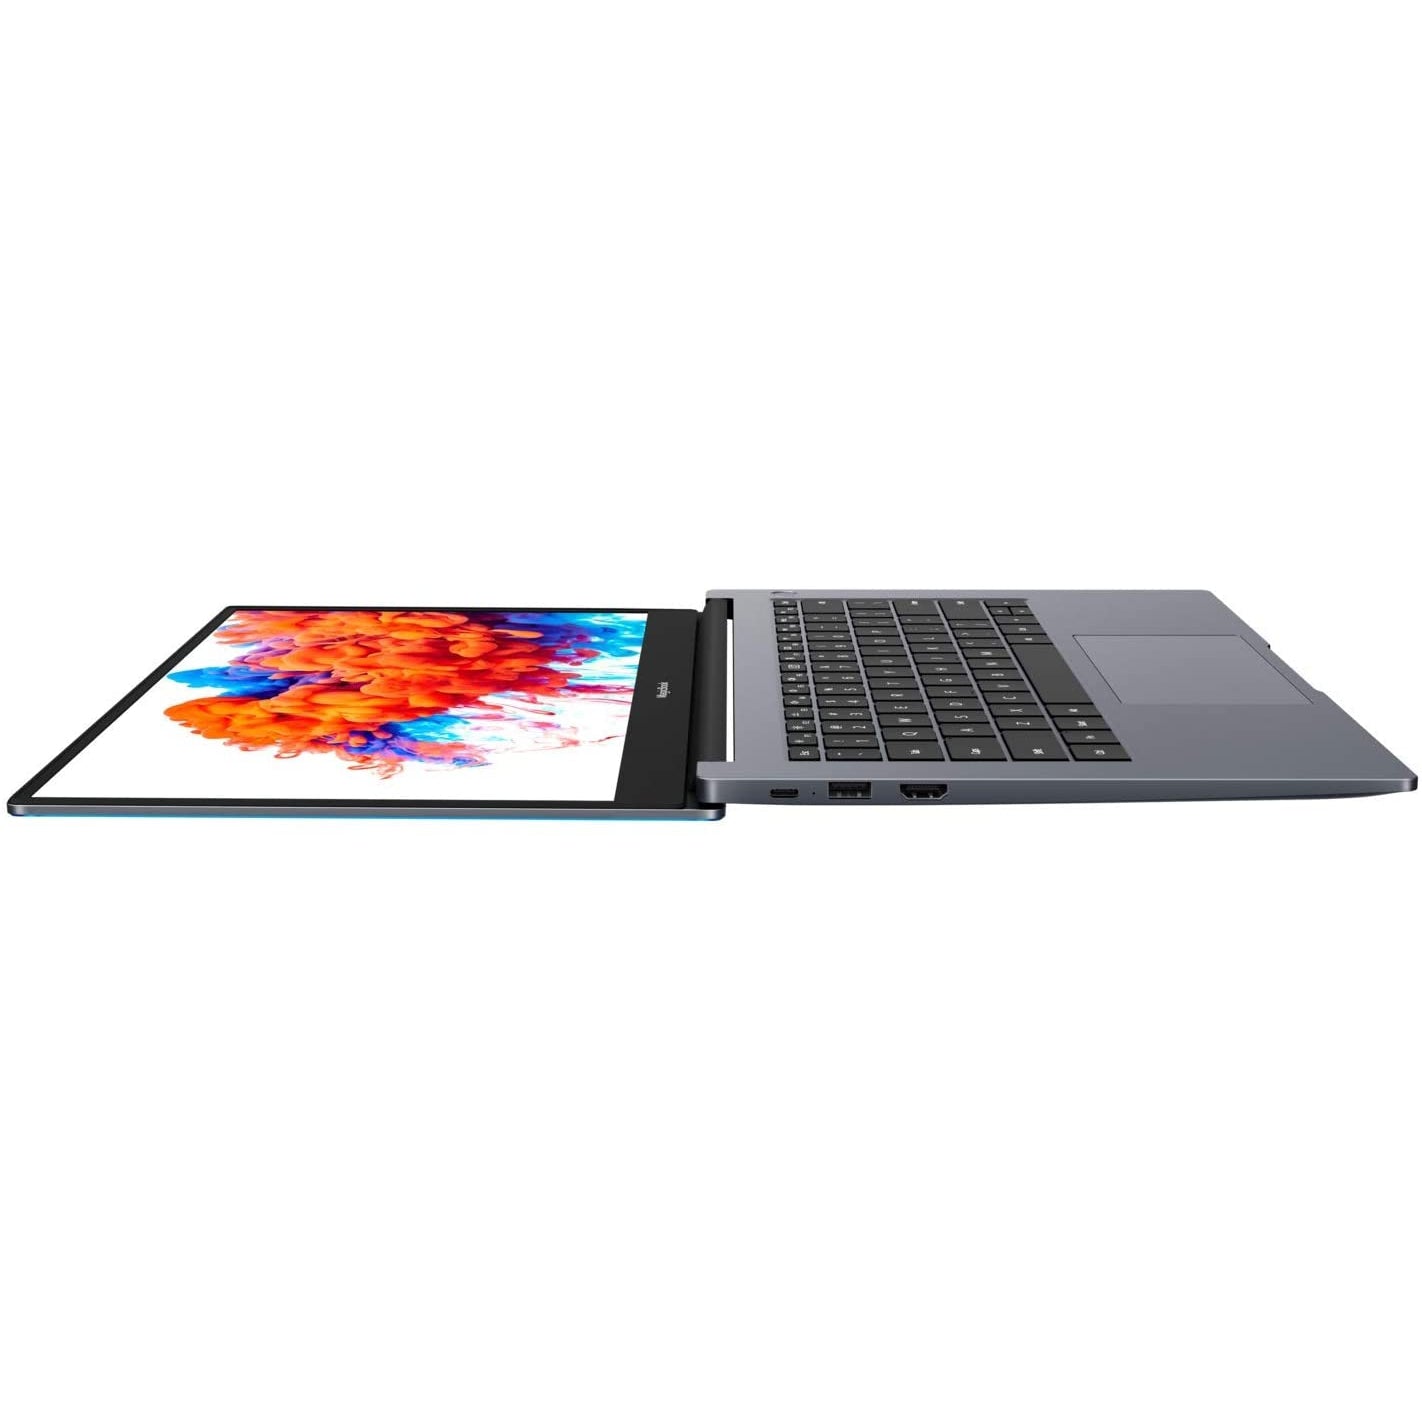 Honor MagicBook 14 inch NBL-WAQ9AHNR Ryzen 5 8GB 256GB Laptop - Grey - Refurbished Pristine